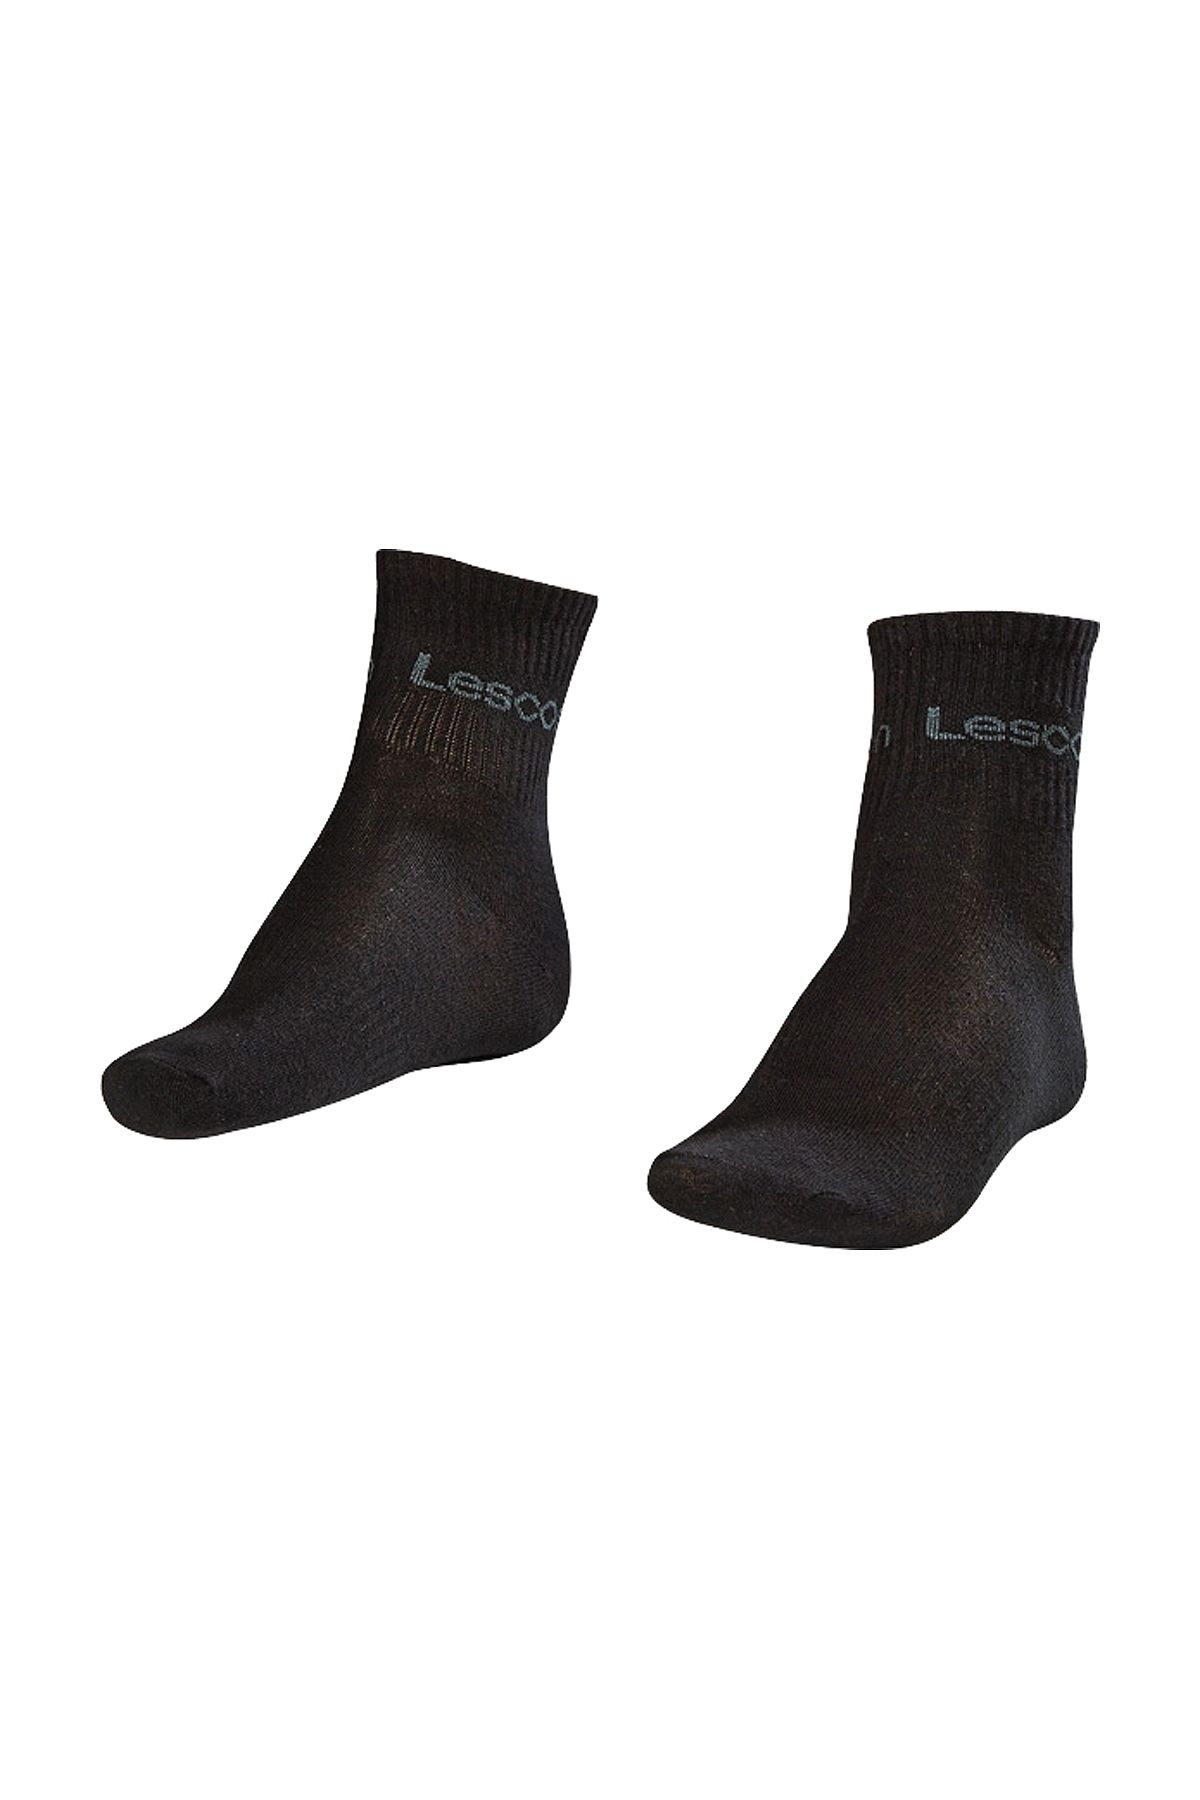 Lescon La-2181 Siyah Tekli Tenis Çorap Kısa 40-45 Numara